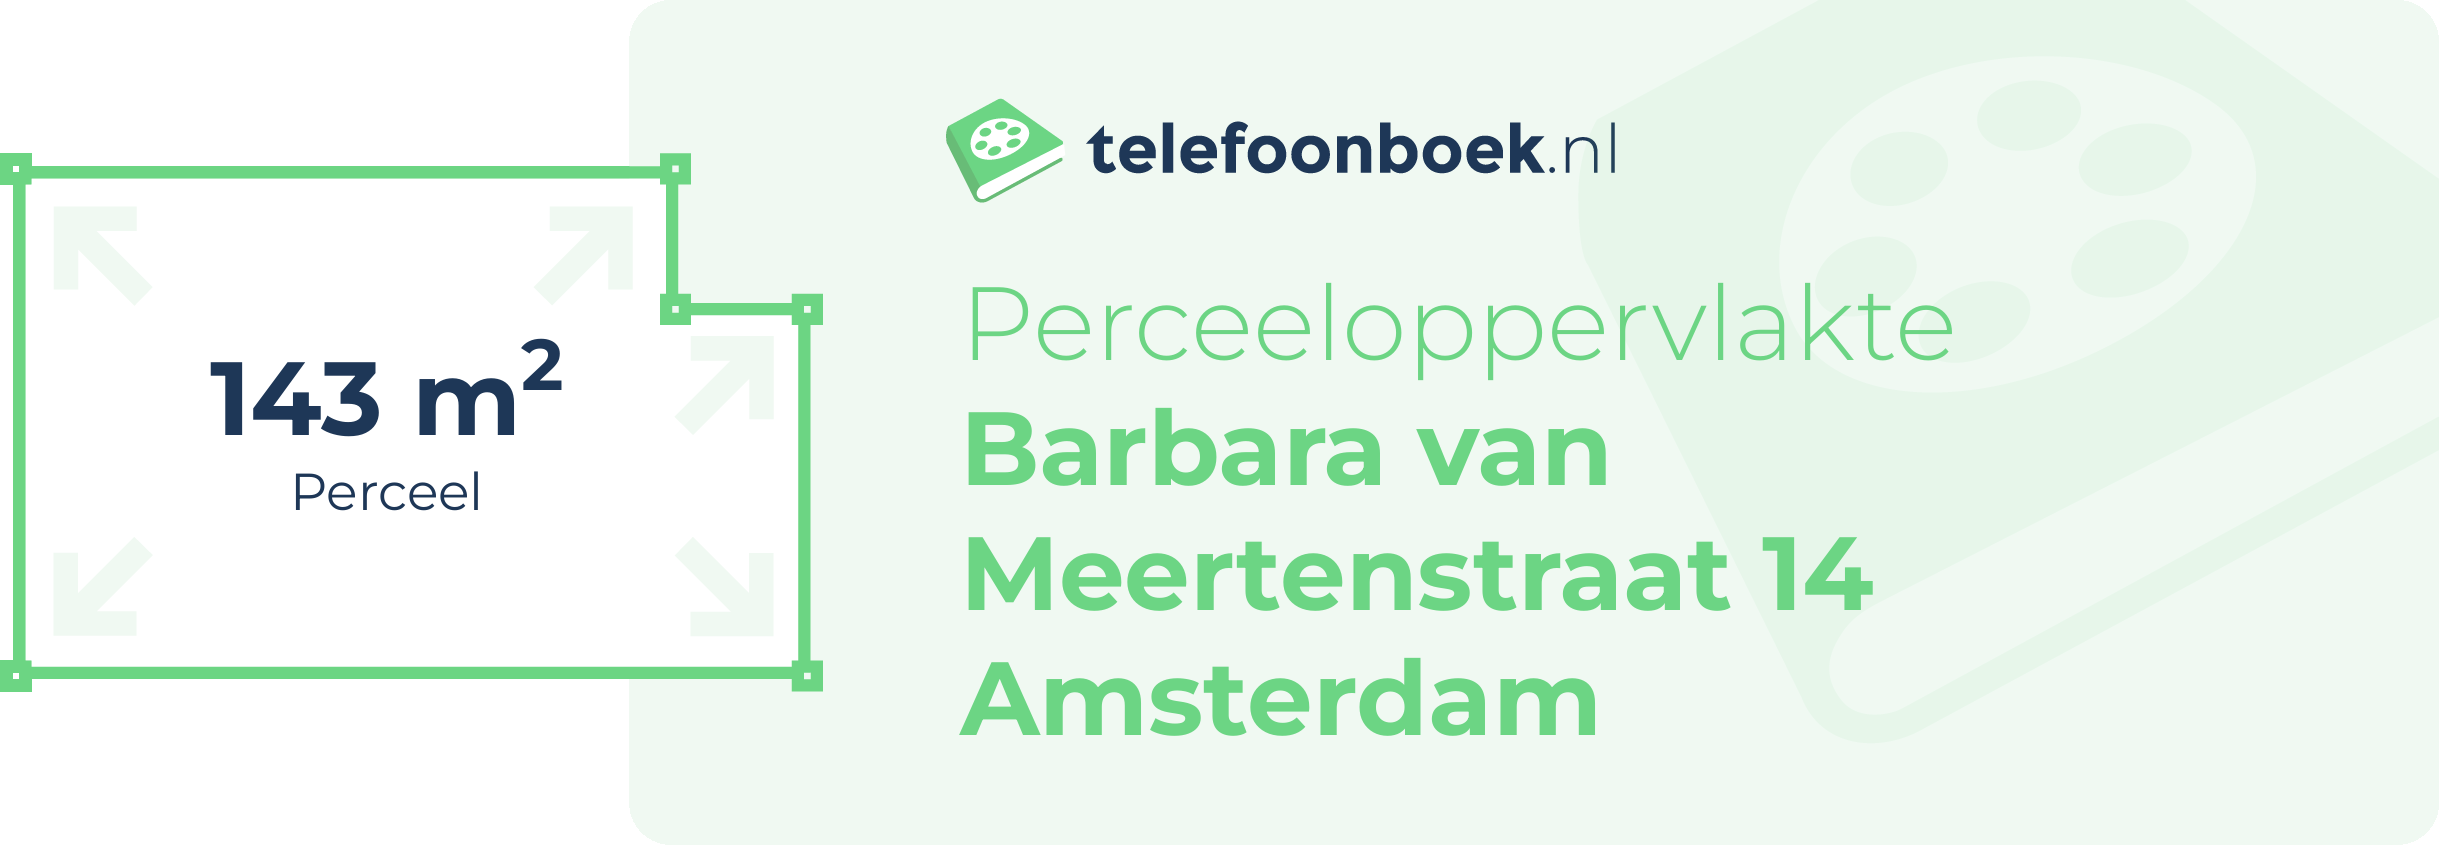 Perceeloppervlakte Barbara Van Meertenstraat 14 Amsterdam